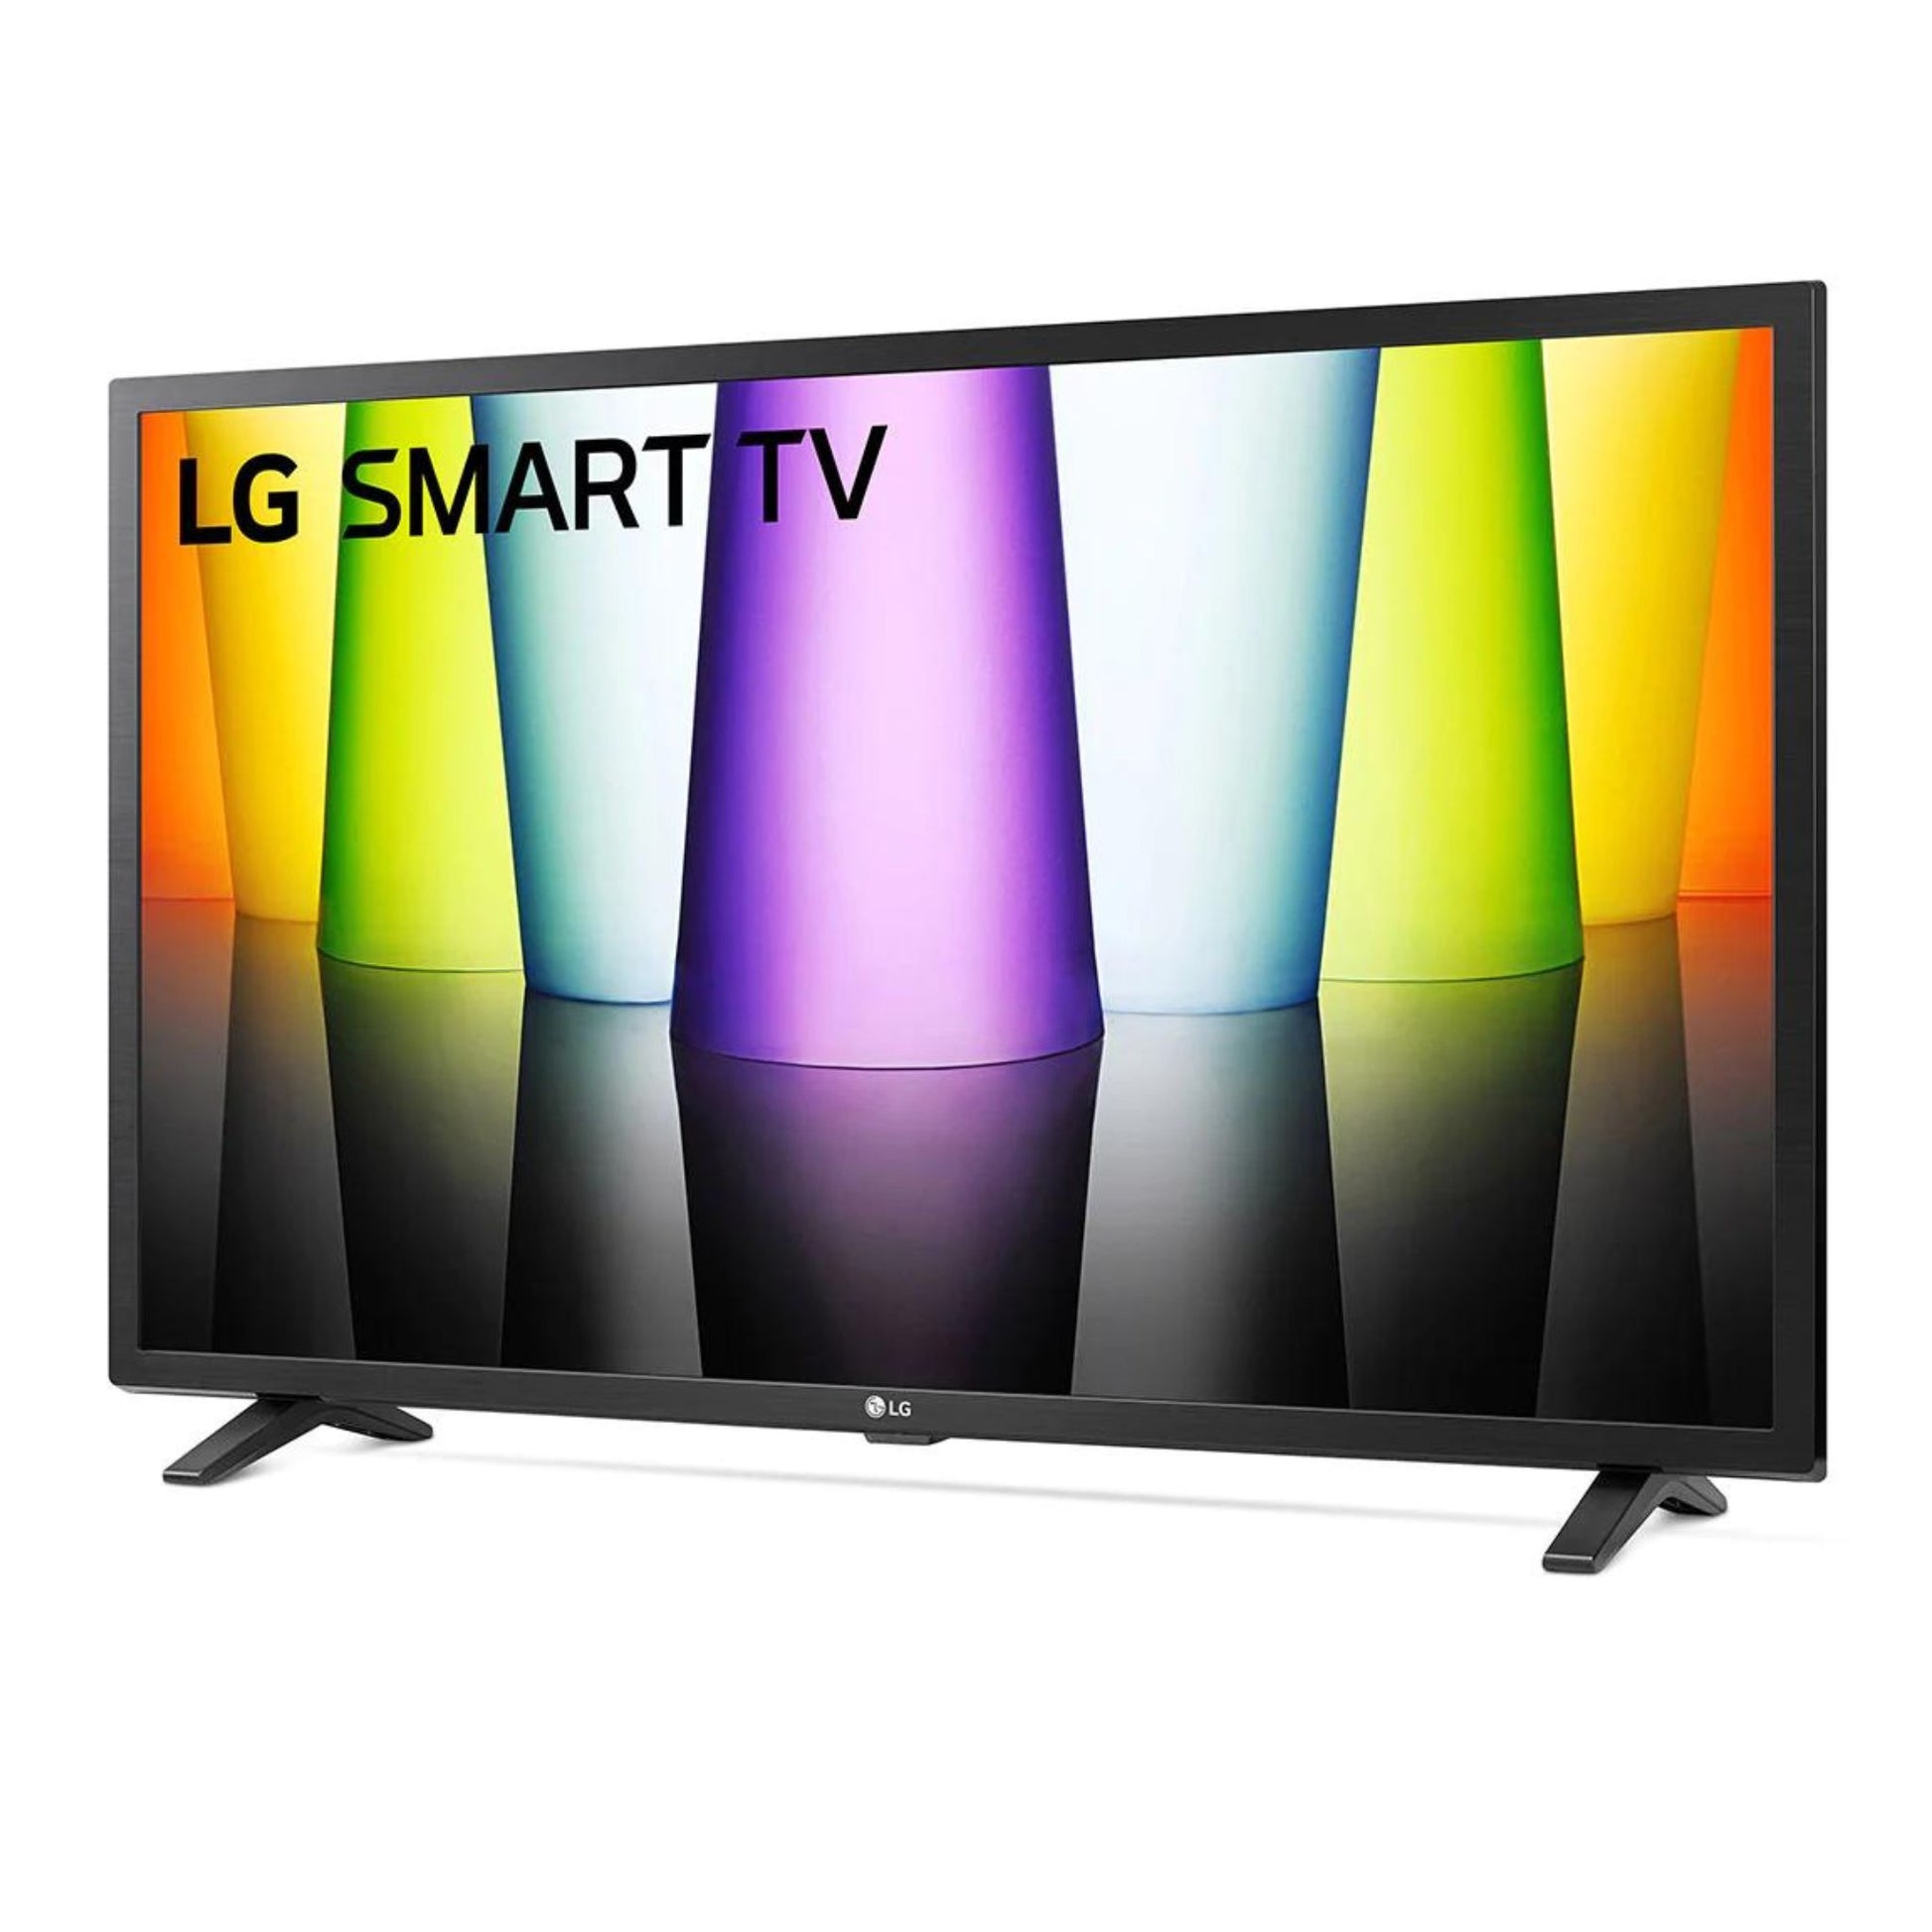 LG 32 inch Smart TV, 32LQ630B